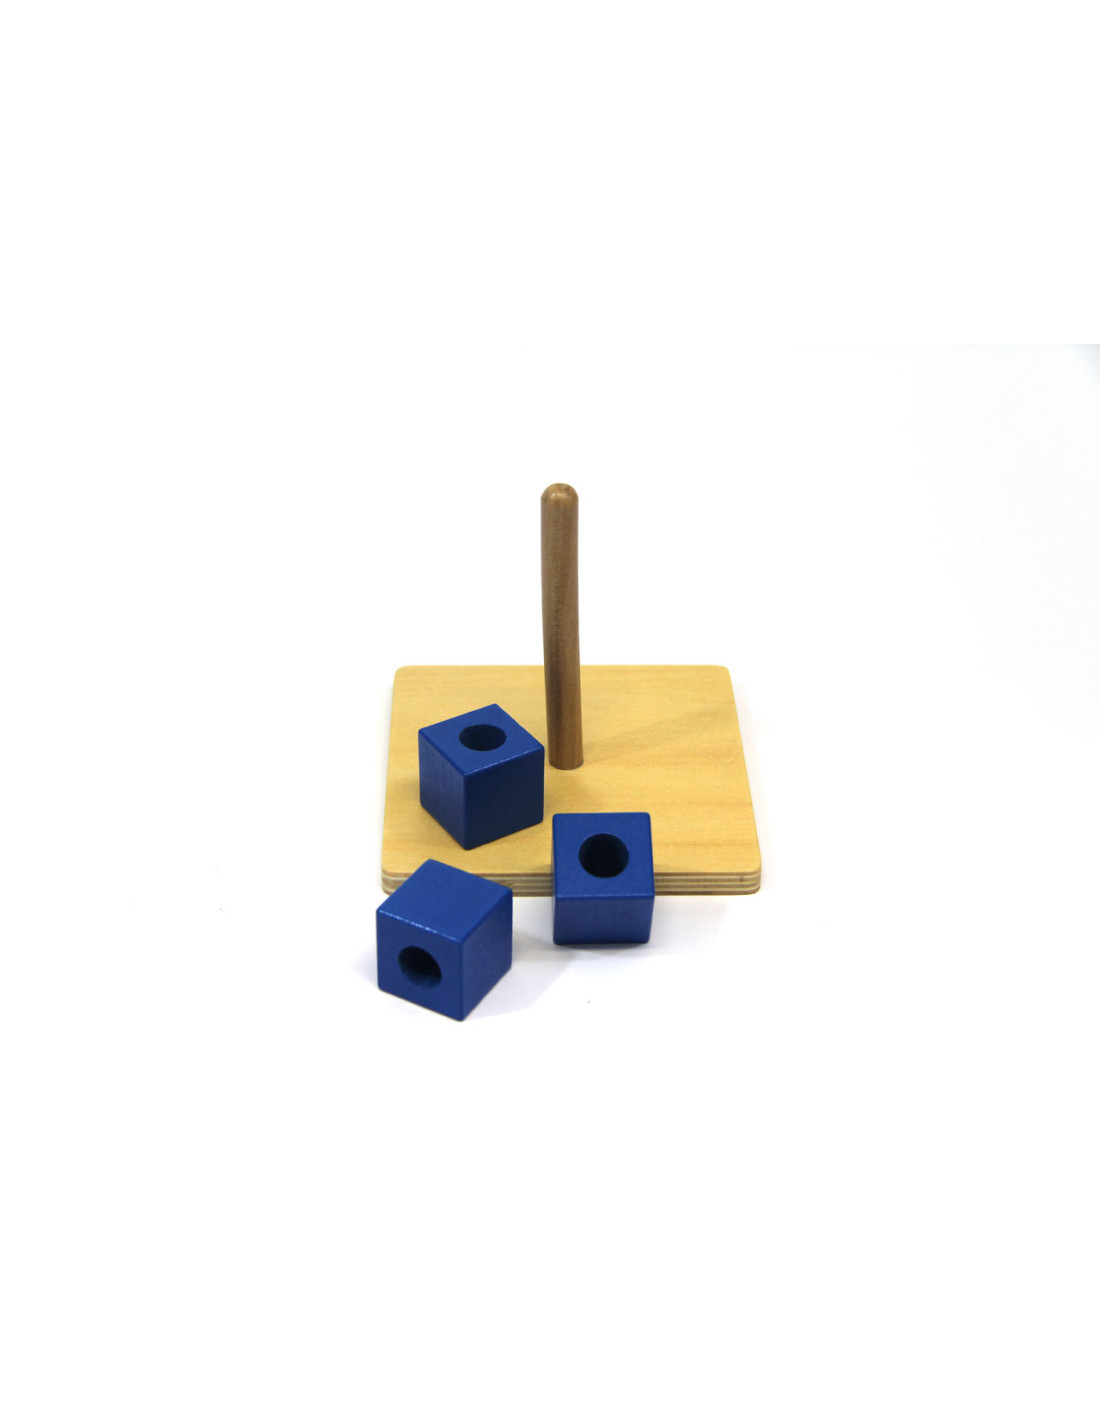 Blocs de construction en bois - Matériel Montessori - Nido Montessori -  jeux éducatif éveil bébé